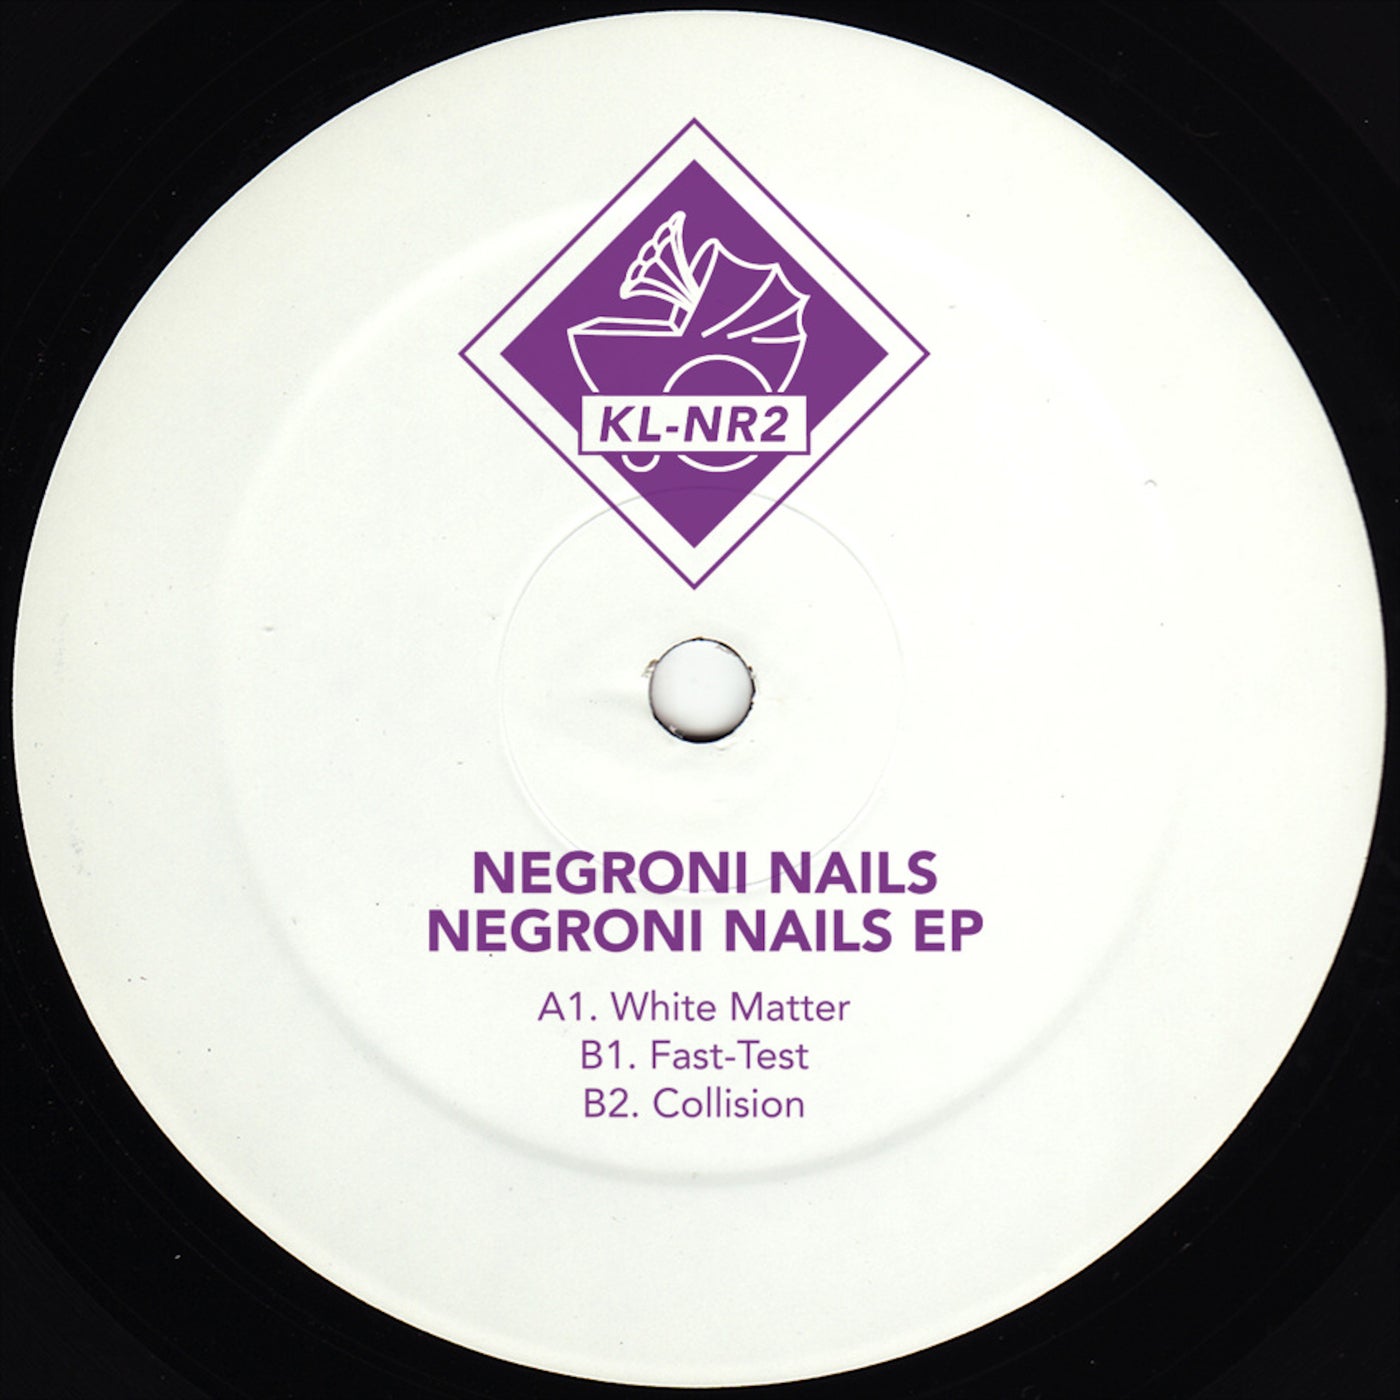 Negroni Nails EP